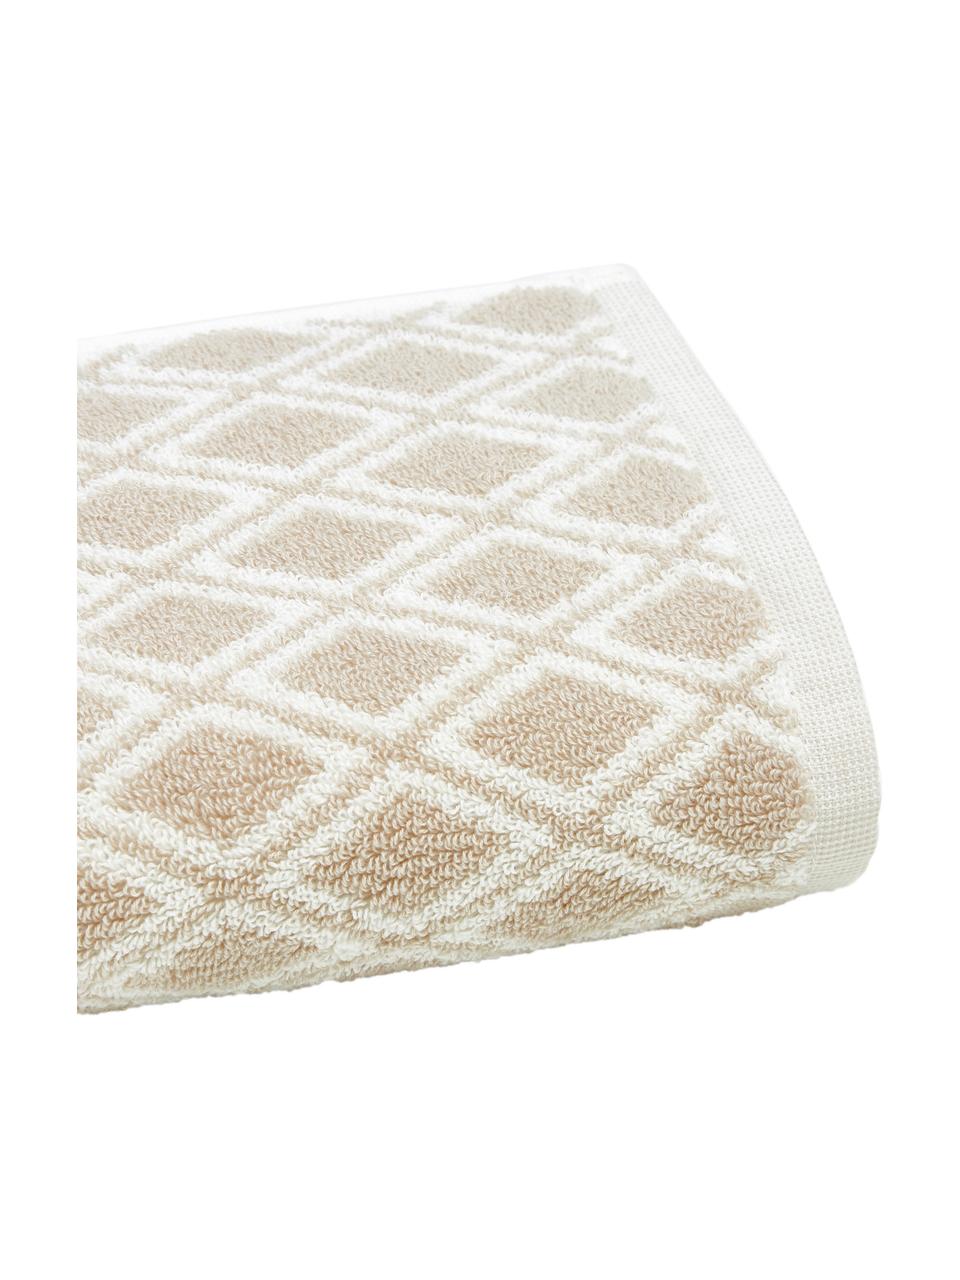 Dubbelzijdige handdoek Ava met grafisch patroon, Zandkleurig, crèmewit, Handdoek, B 50 x L 100 cm, 2 stuks